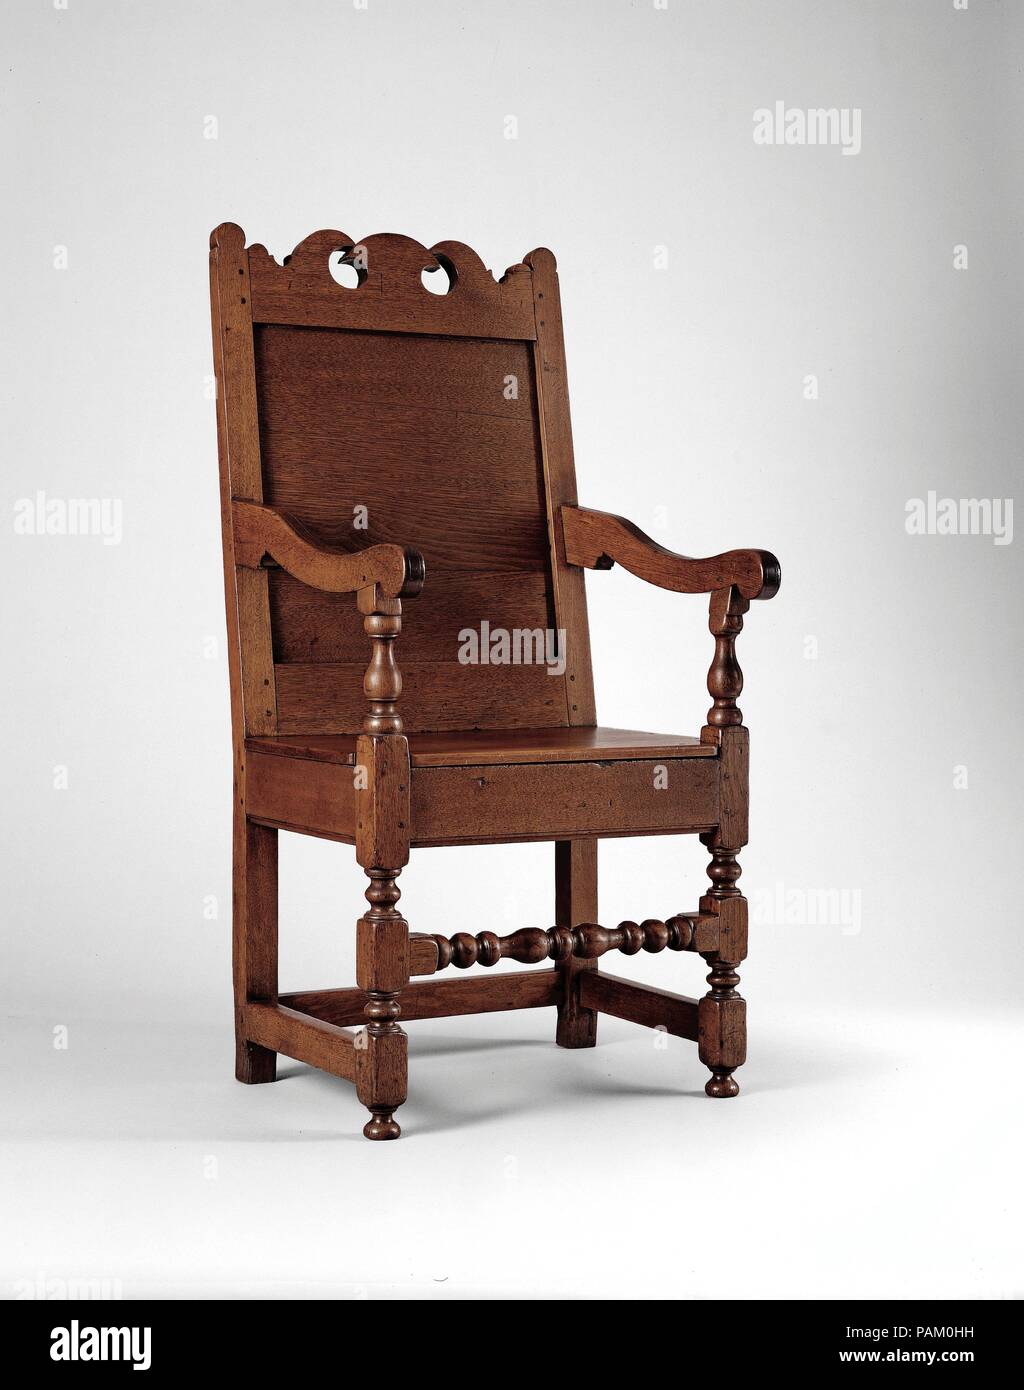 S'est joint à un fauteuil. Culture : L'Américain. Dimensions : 45 x 22 1/2 x 23 1/4 in. (115,6 x 55,9 x 59,1 cm). Date : 1690-1720. L'utilisation de meubles en noyer noir caractérise dans le sud-est de la Pennsylvanie dans cette période. Au contraire de l'Angleterre et lambrissé de chaises, qui ont été sculptés, cette chaire est ornementée que par sa crête scié avec rail d'accompagnement croissants partielle d'un motif en forme de champignon. La conception est similaire à celle de crest rails sur des chaises produites dans le Cheshire et le sud du Lancashire en Angleterre, suggérant l'influence des artisans. Musée : Metropolitan Museum of Art, New York, USA. Banque D'Images